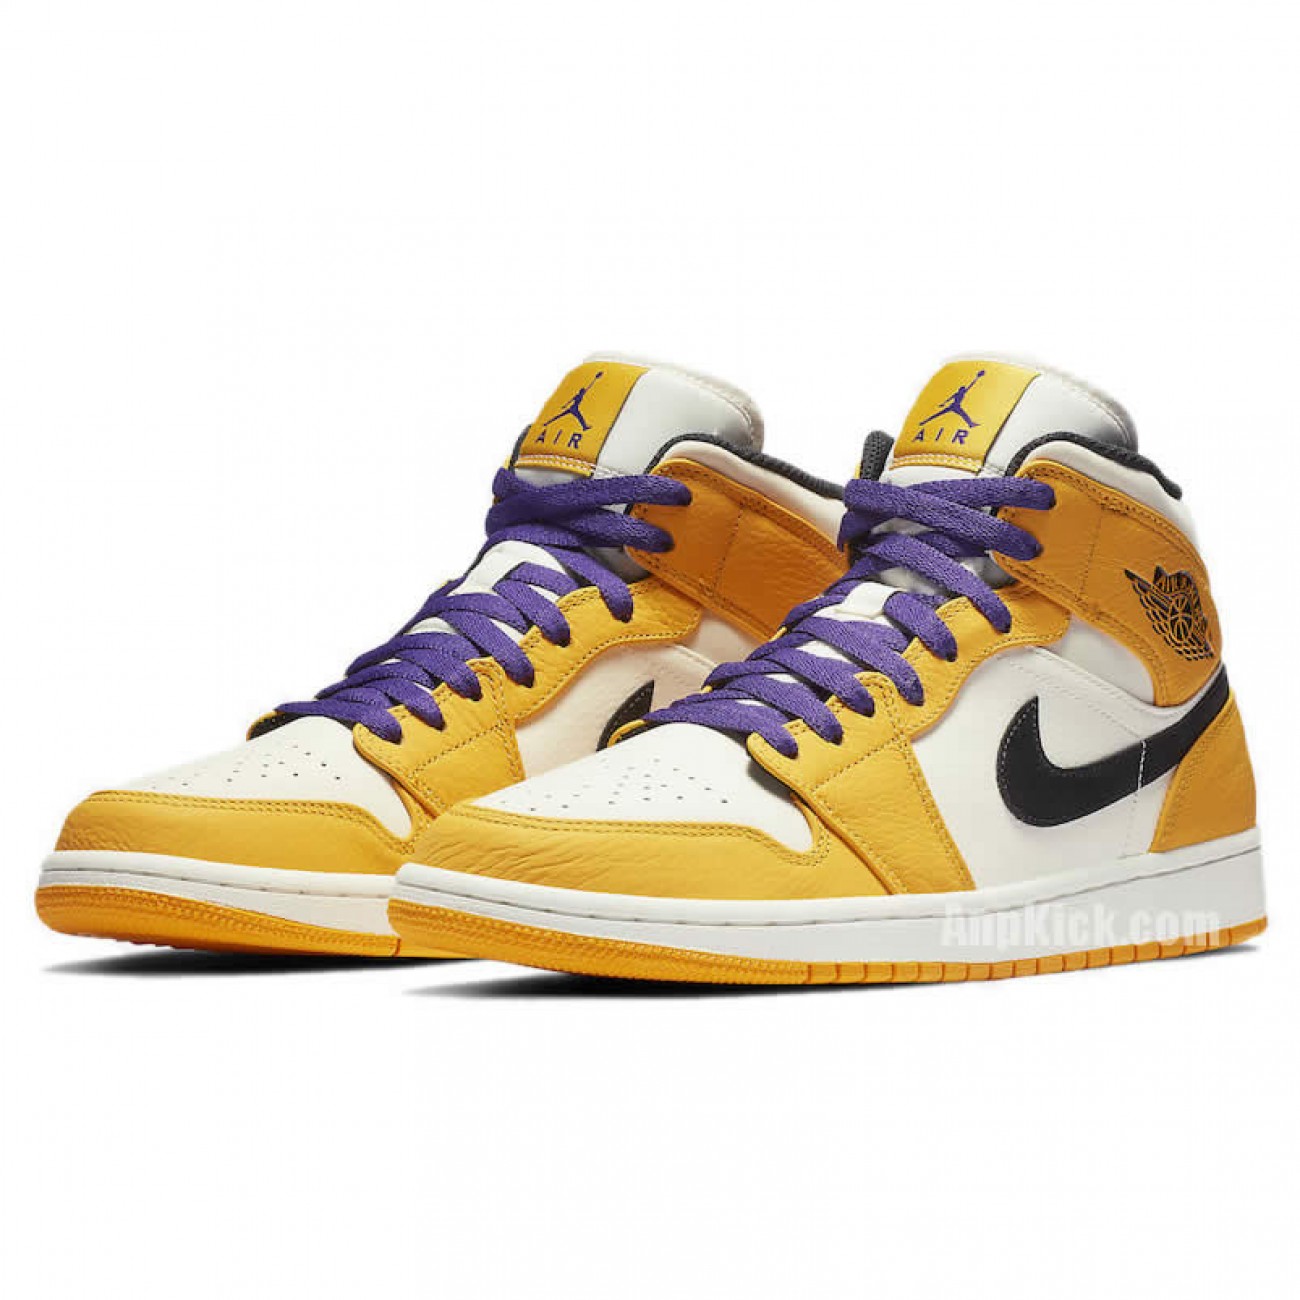 Air Jordan 1 Mid 2019 "Lakers" Yellow Purple Release Date 852542-700